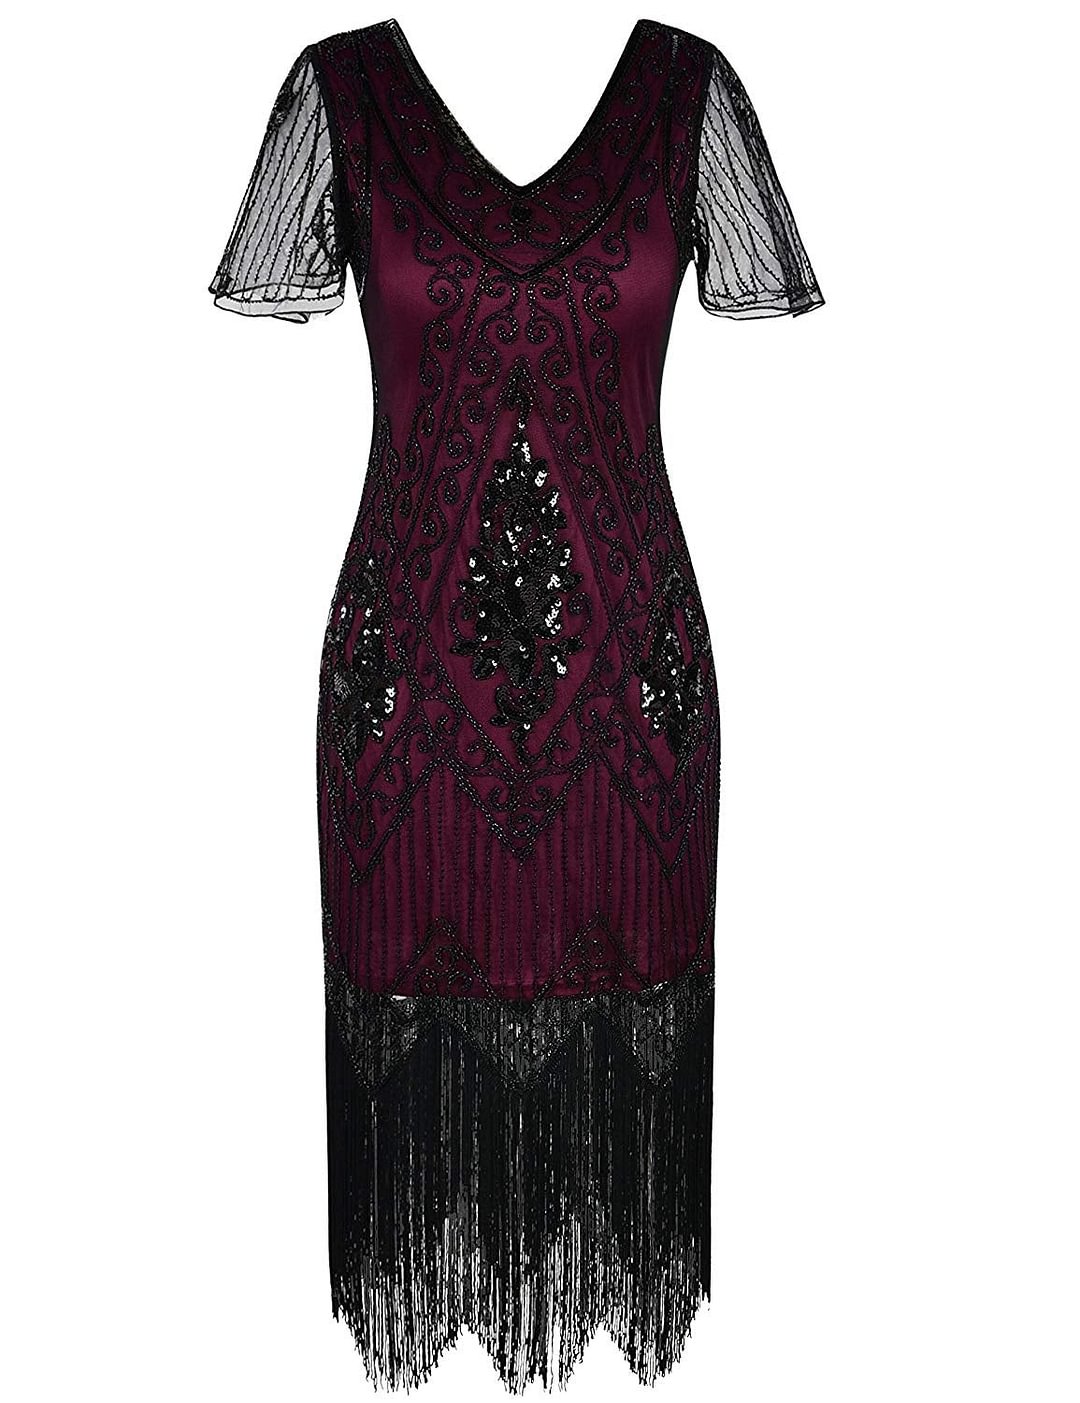 Flapper dress Women's 1920s Dress Sequin Art Deco Flapper Dress with Sleeve